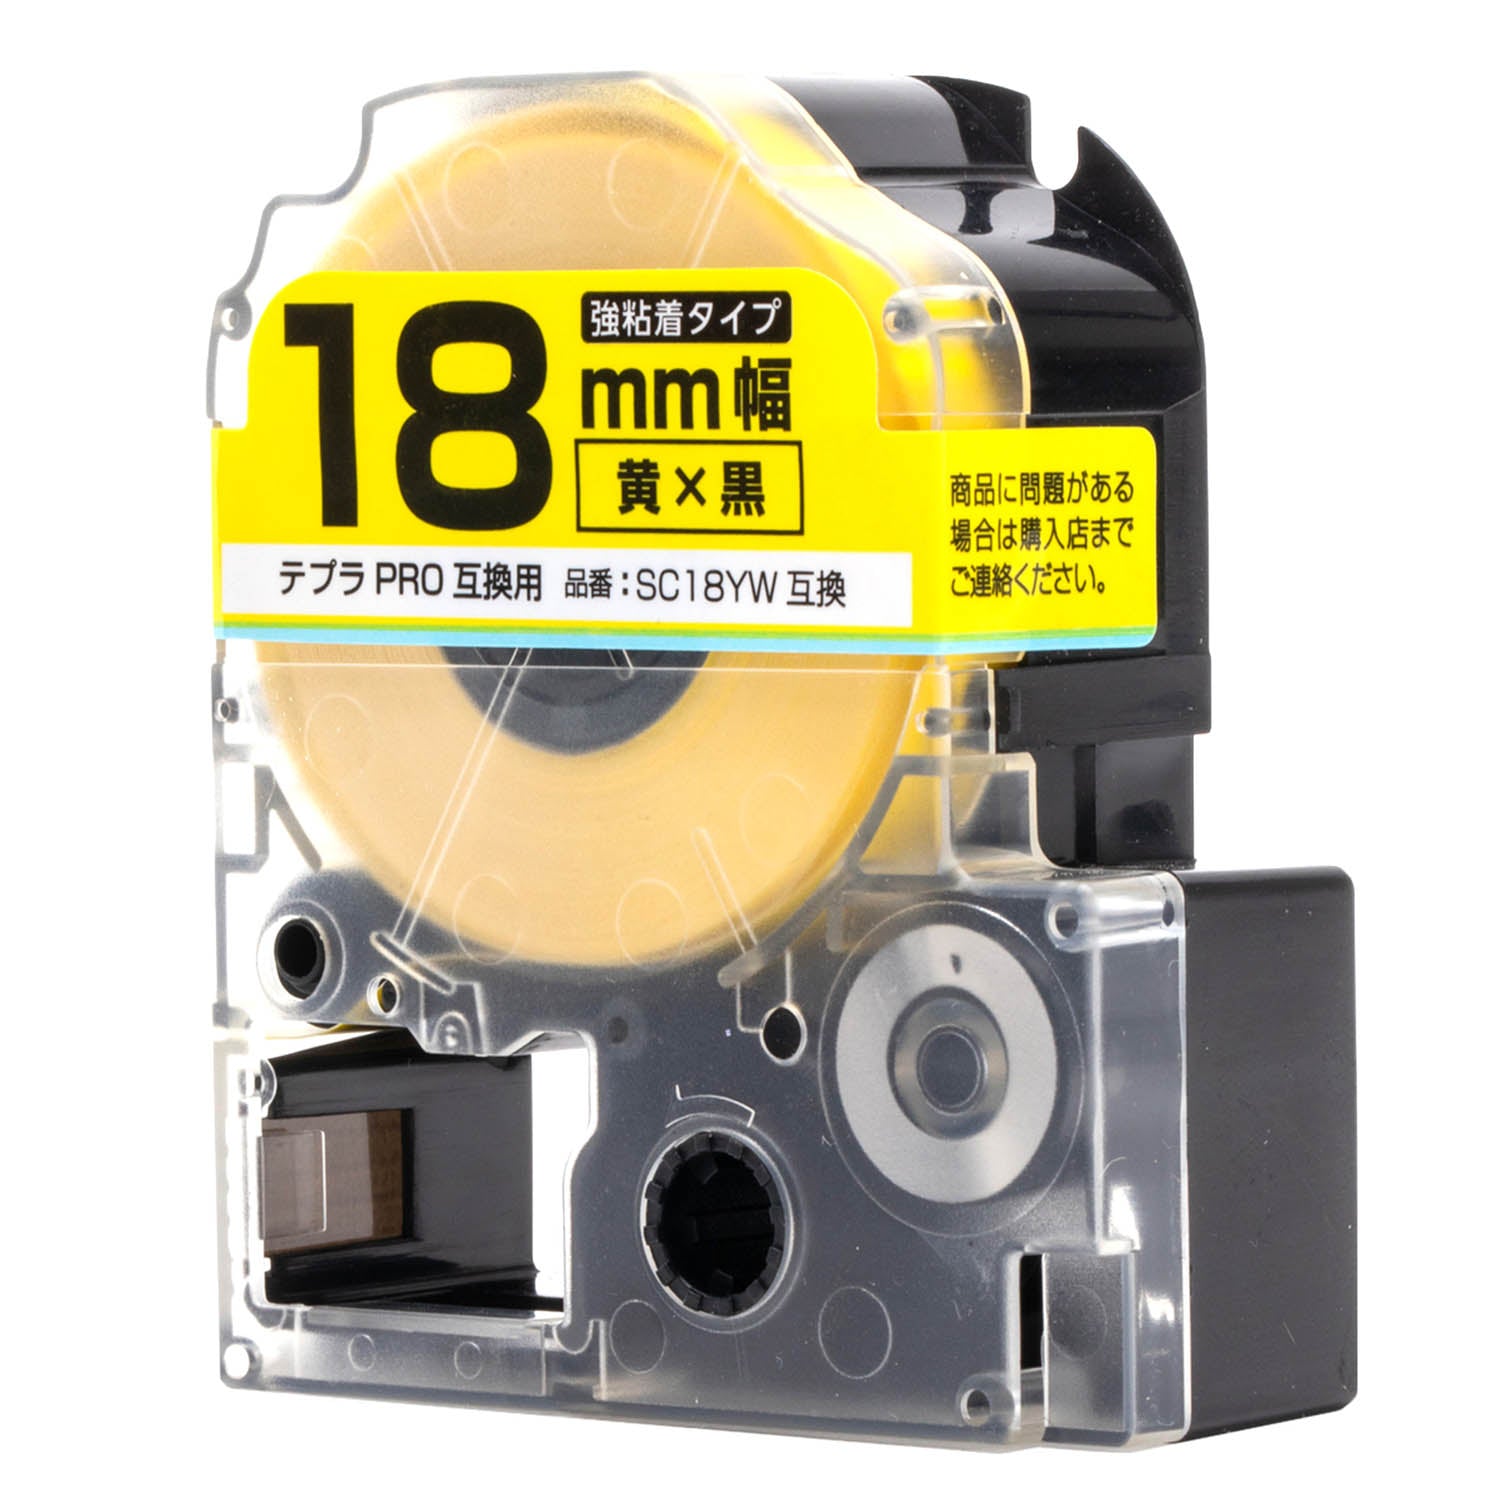 テプラPRO用互換テープカートリッジ 黄×黒文字 18mm